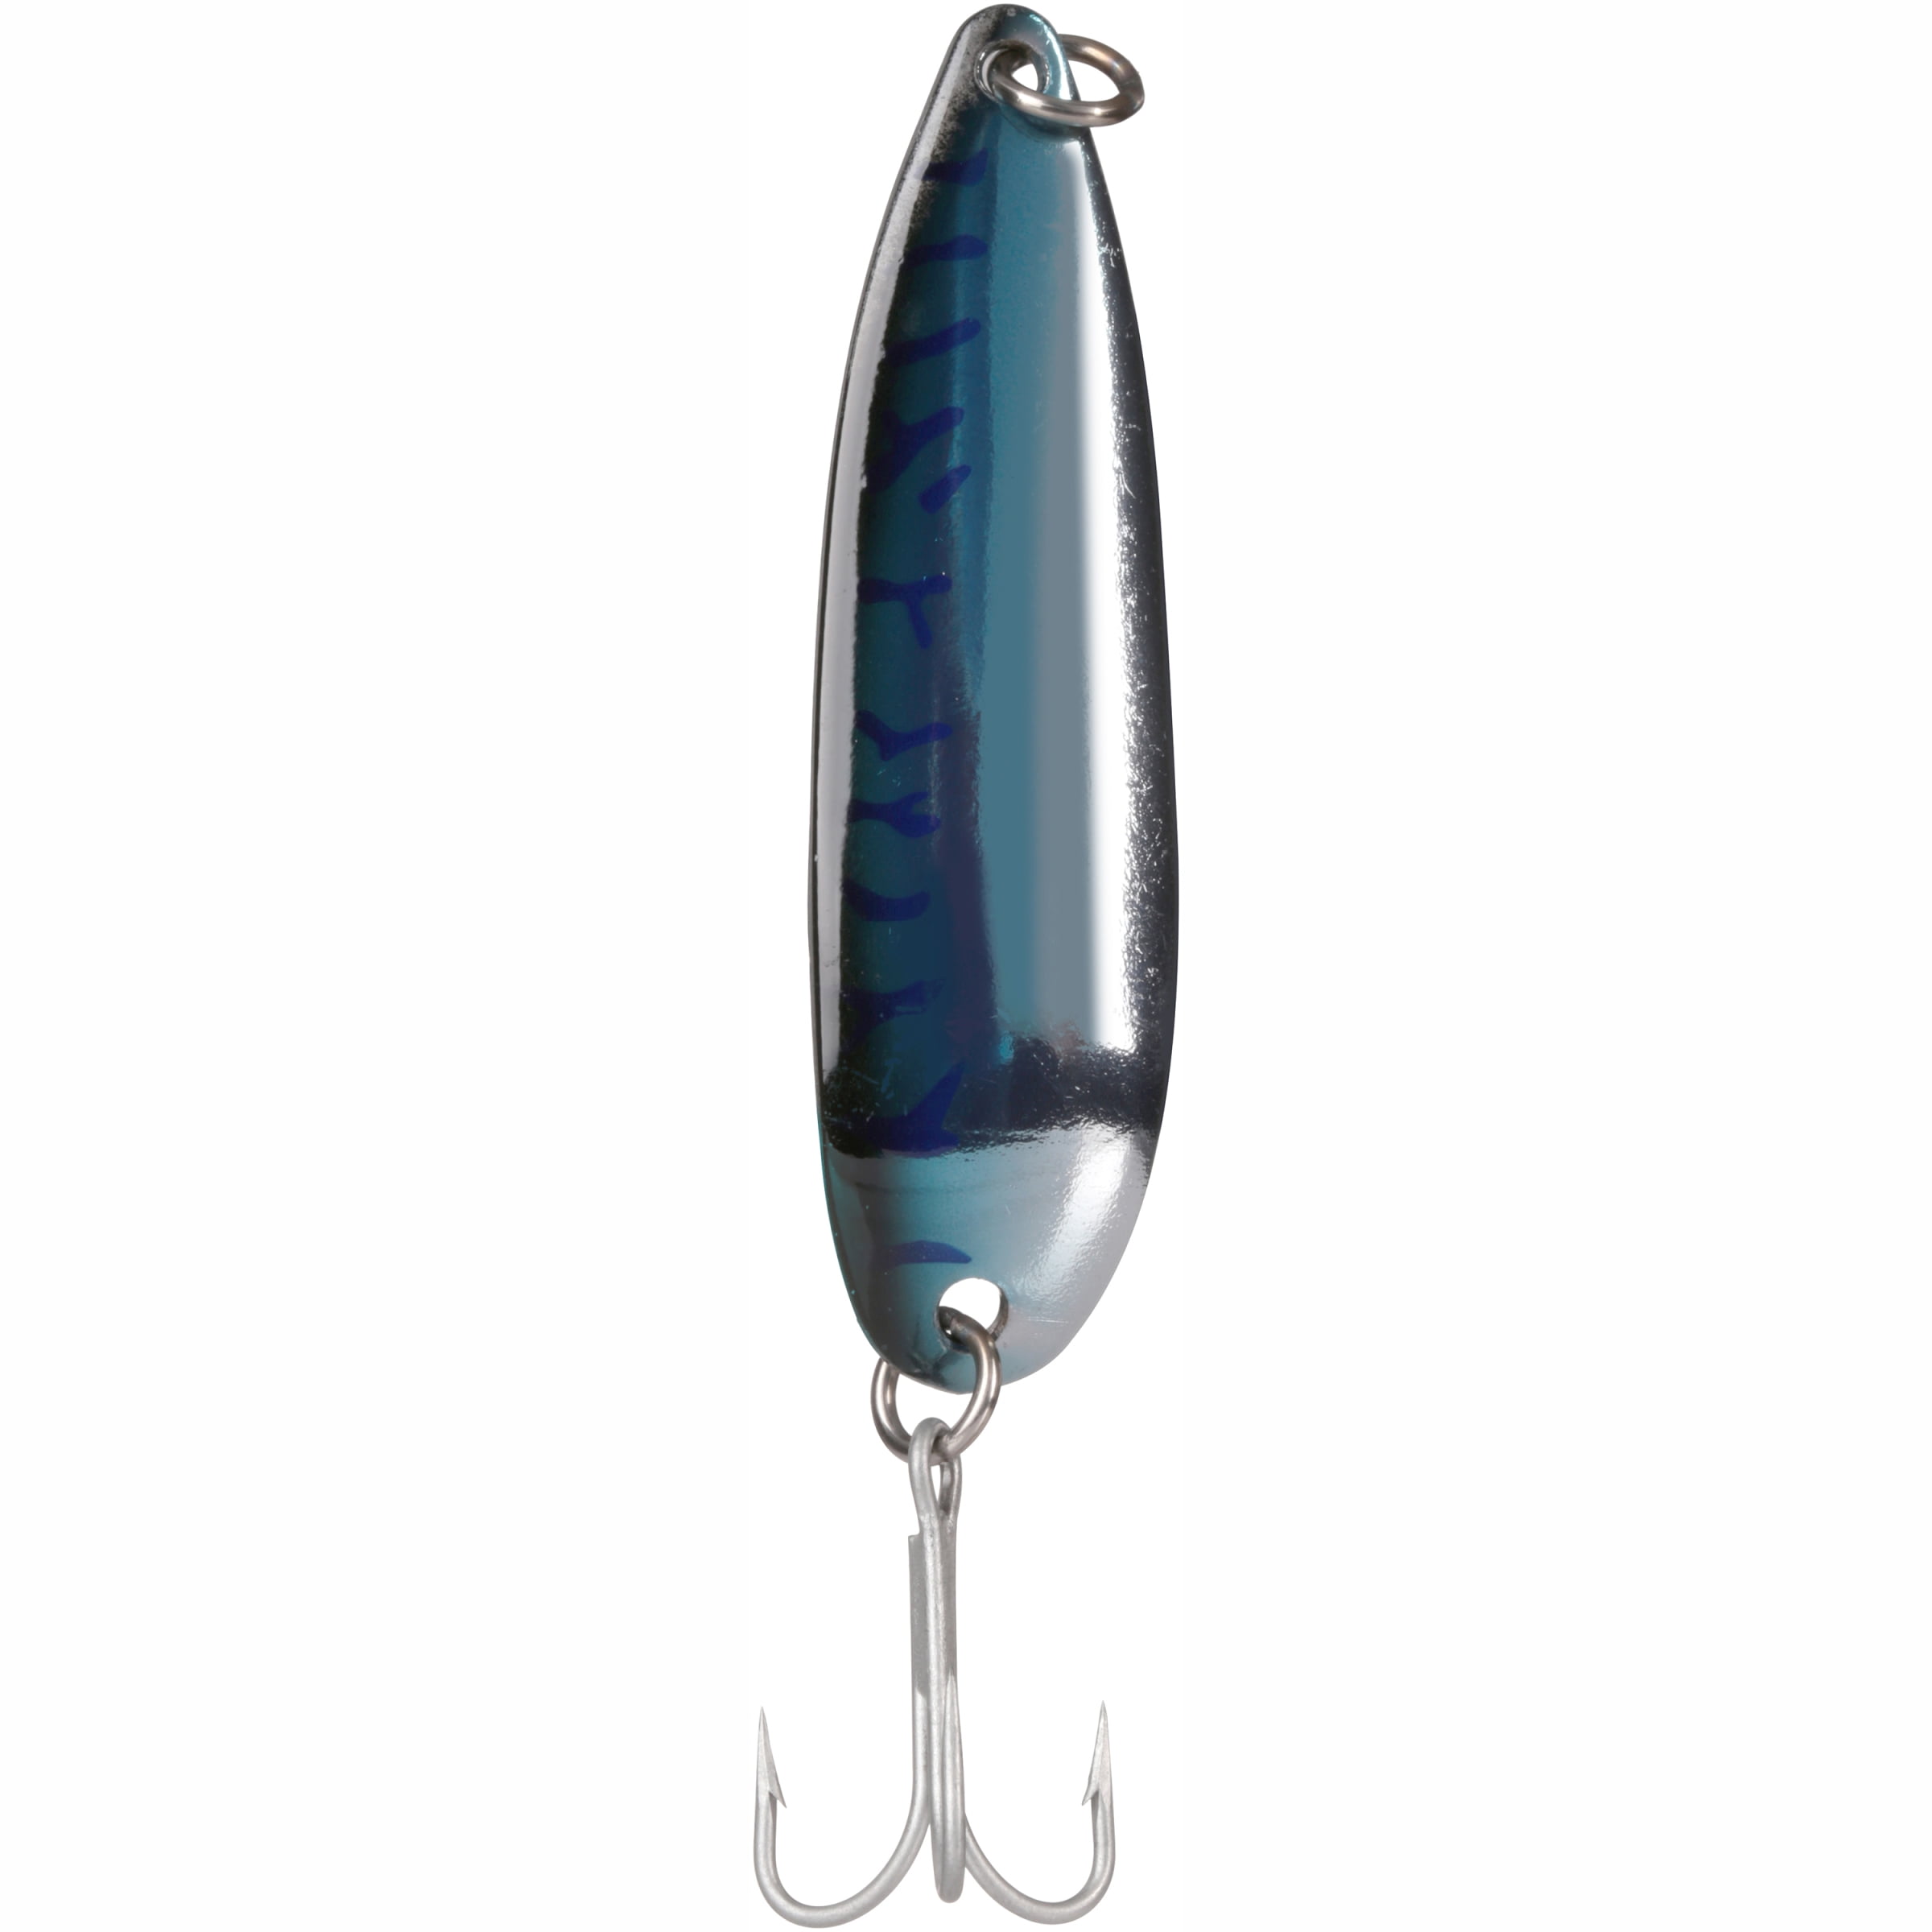 Luhr Jensen Krocodile 1oz Spoon Fishing Lure 3 5/16 Chrome/Silver